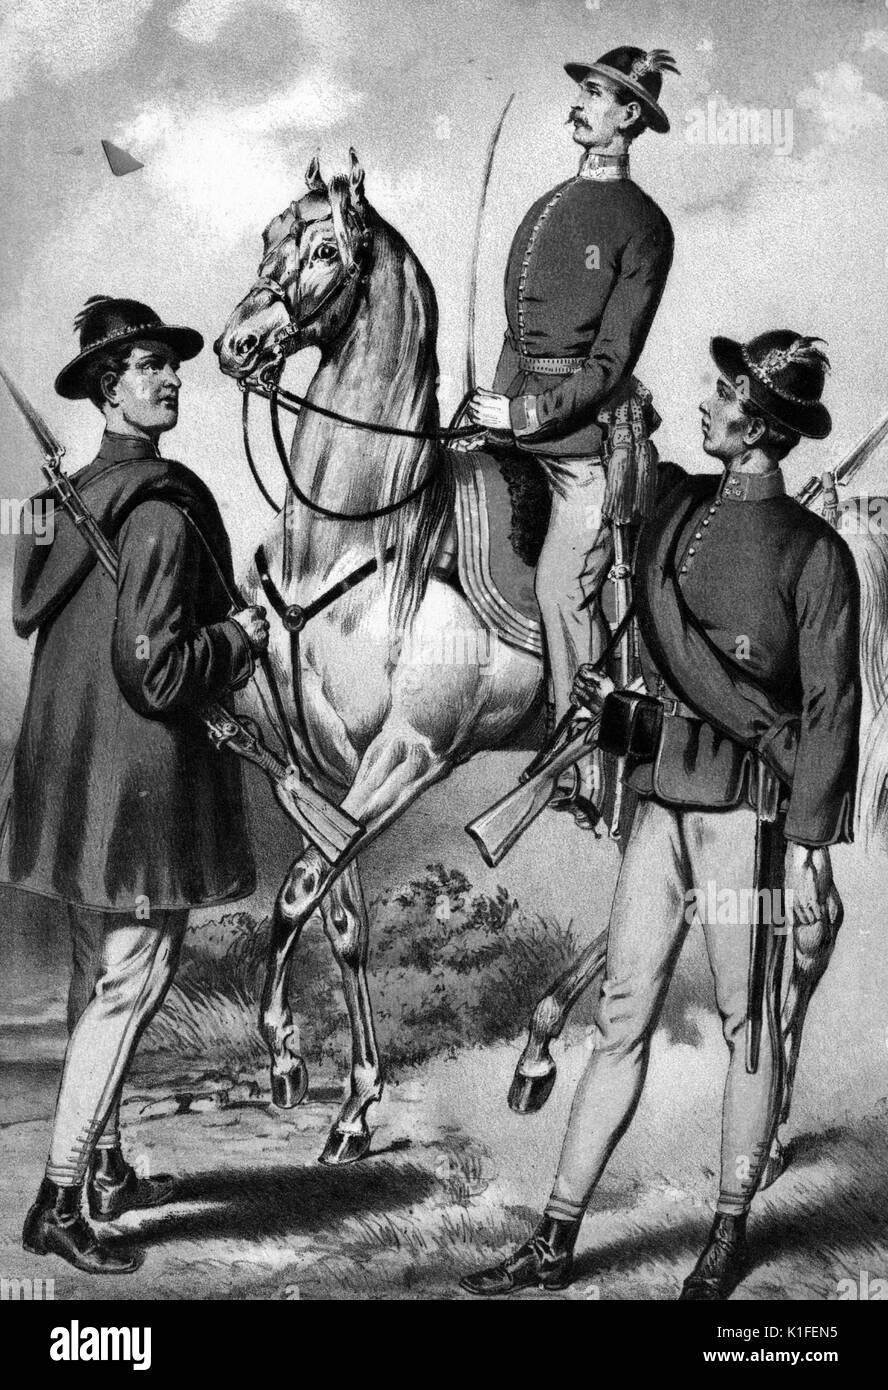 Lithographie couleur représentant trois soldats allemands, l'un sur un cheval, intitulé West Galisch Frei infanterie Corps, 1859. À partir de la Bibliothèque publique de New York. Banque D'Images